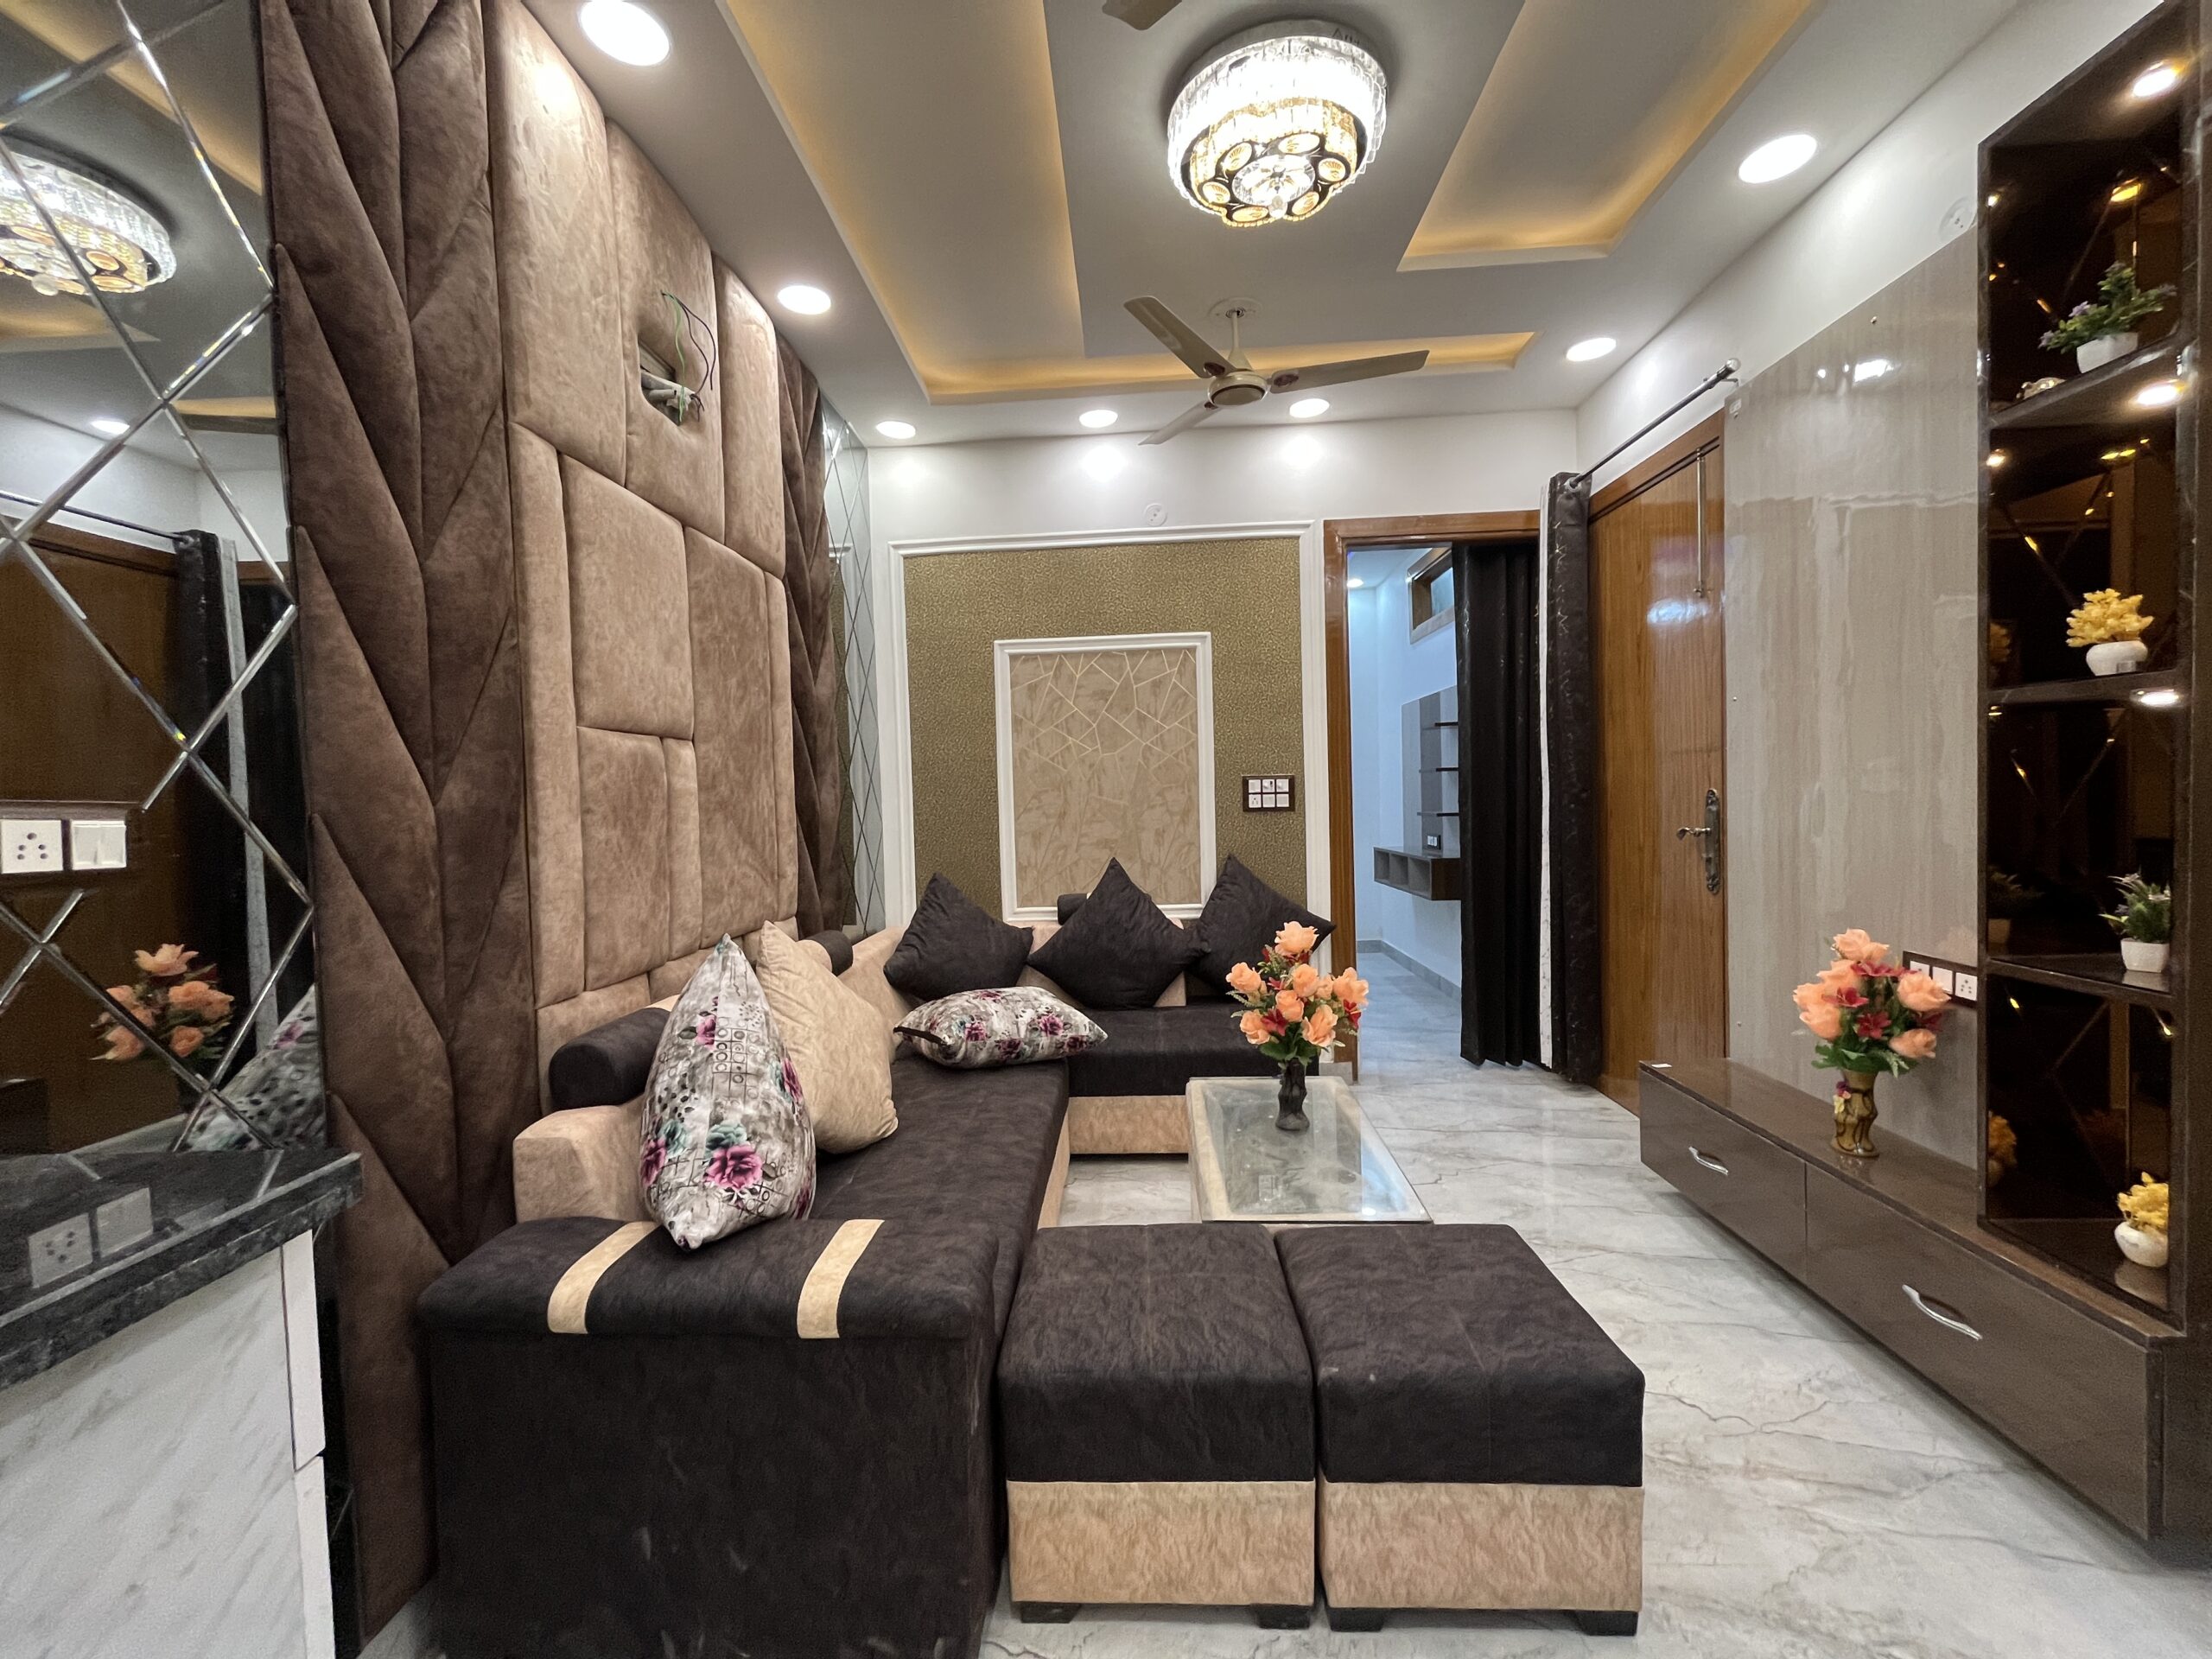 2 BHK Fully Furnished Flat in Uttam Nagar | Sanvi Real Estate